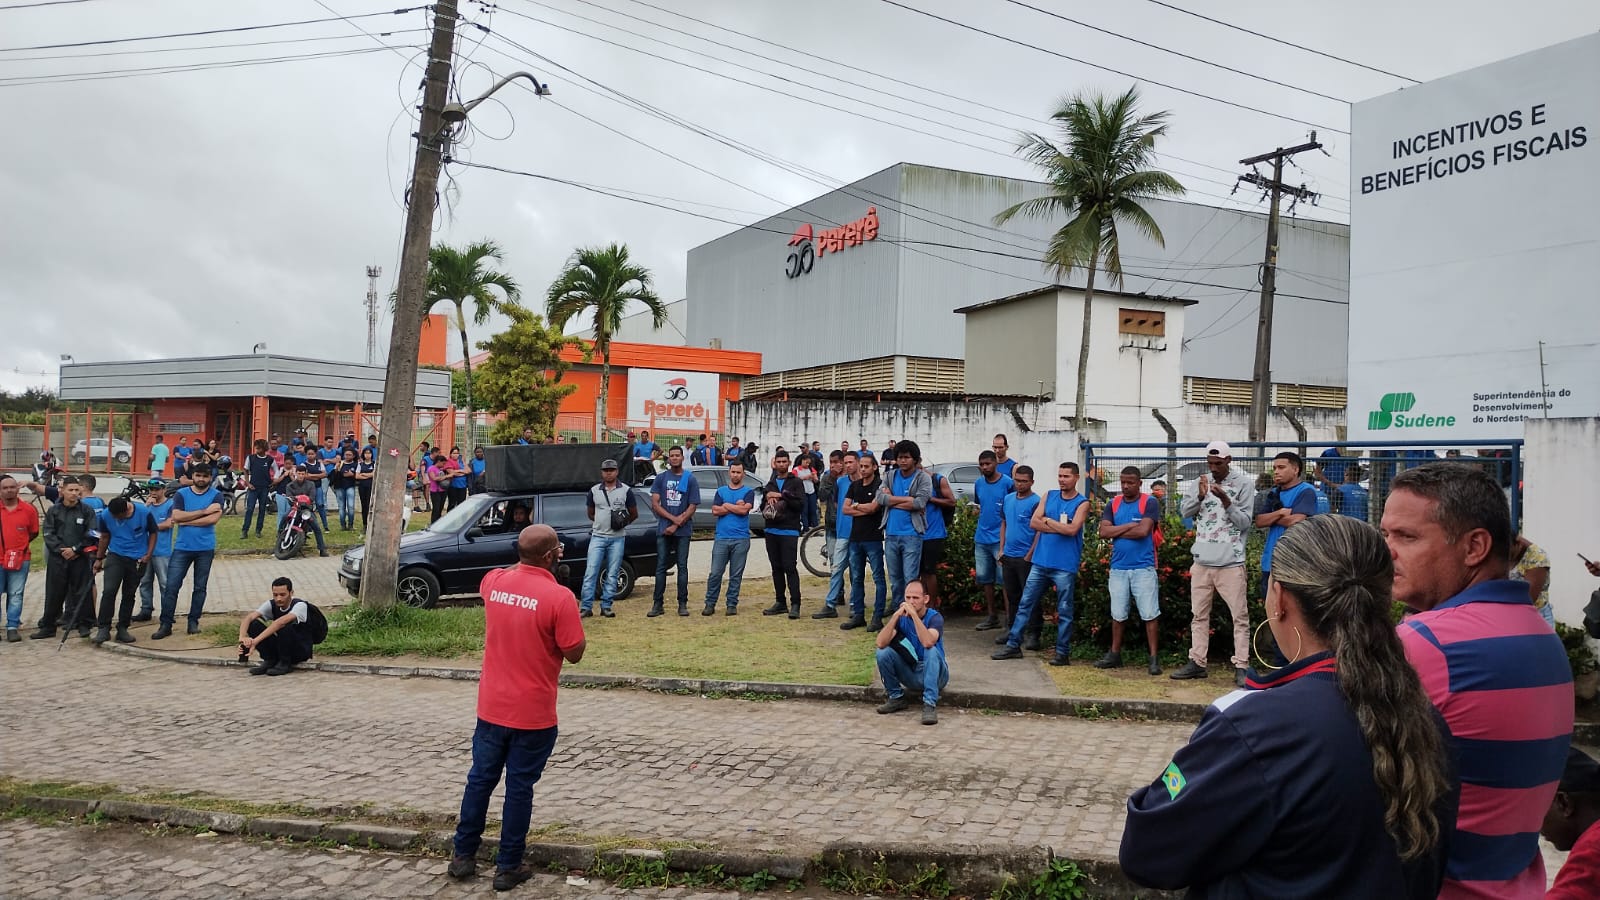 Metalúrgicos estendem greve e realizam protesto em prol dos seus direitos